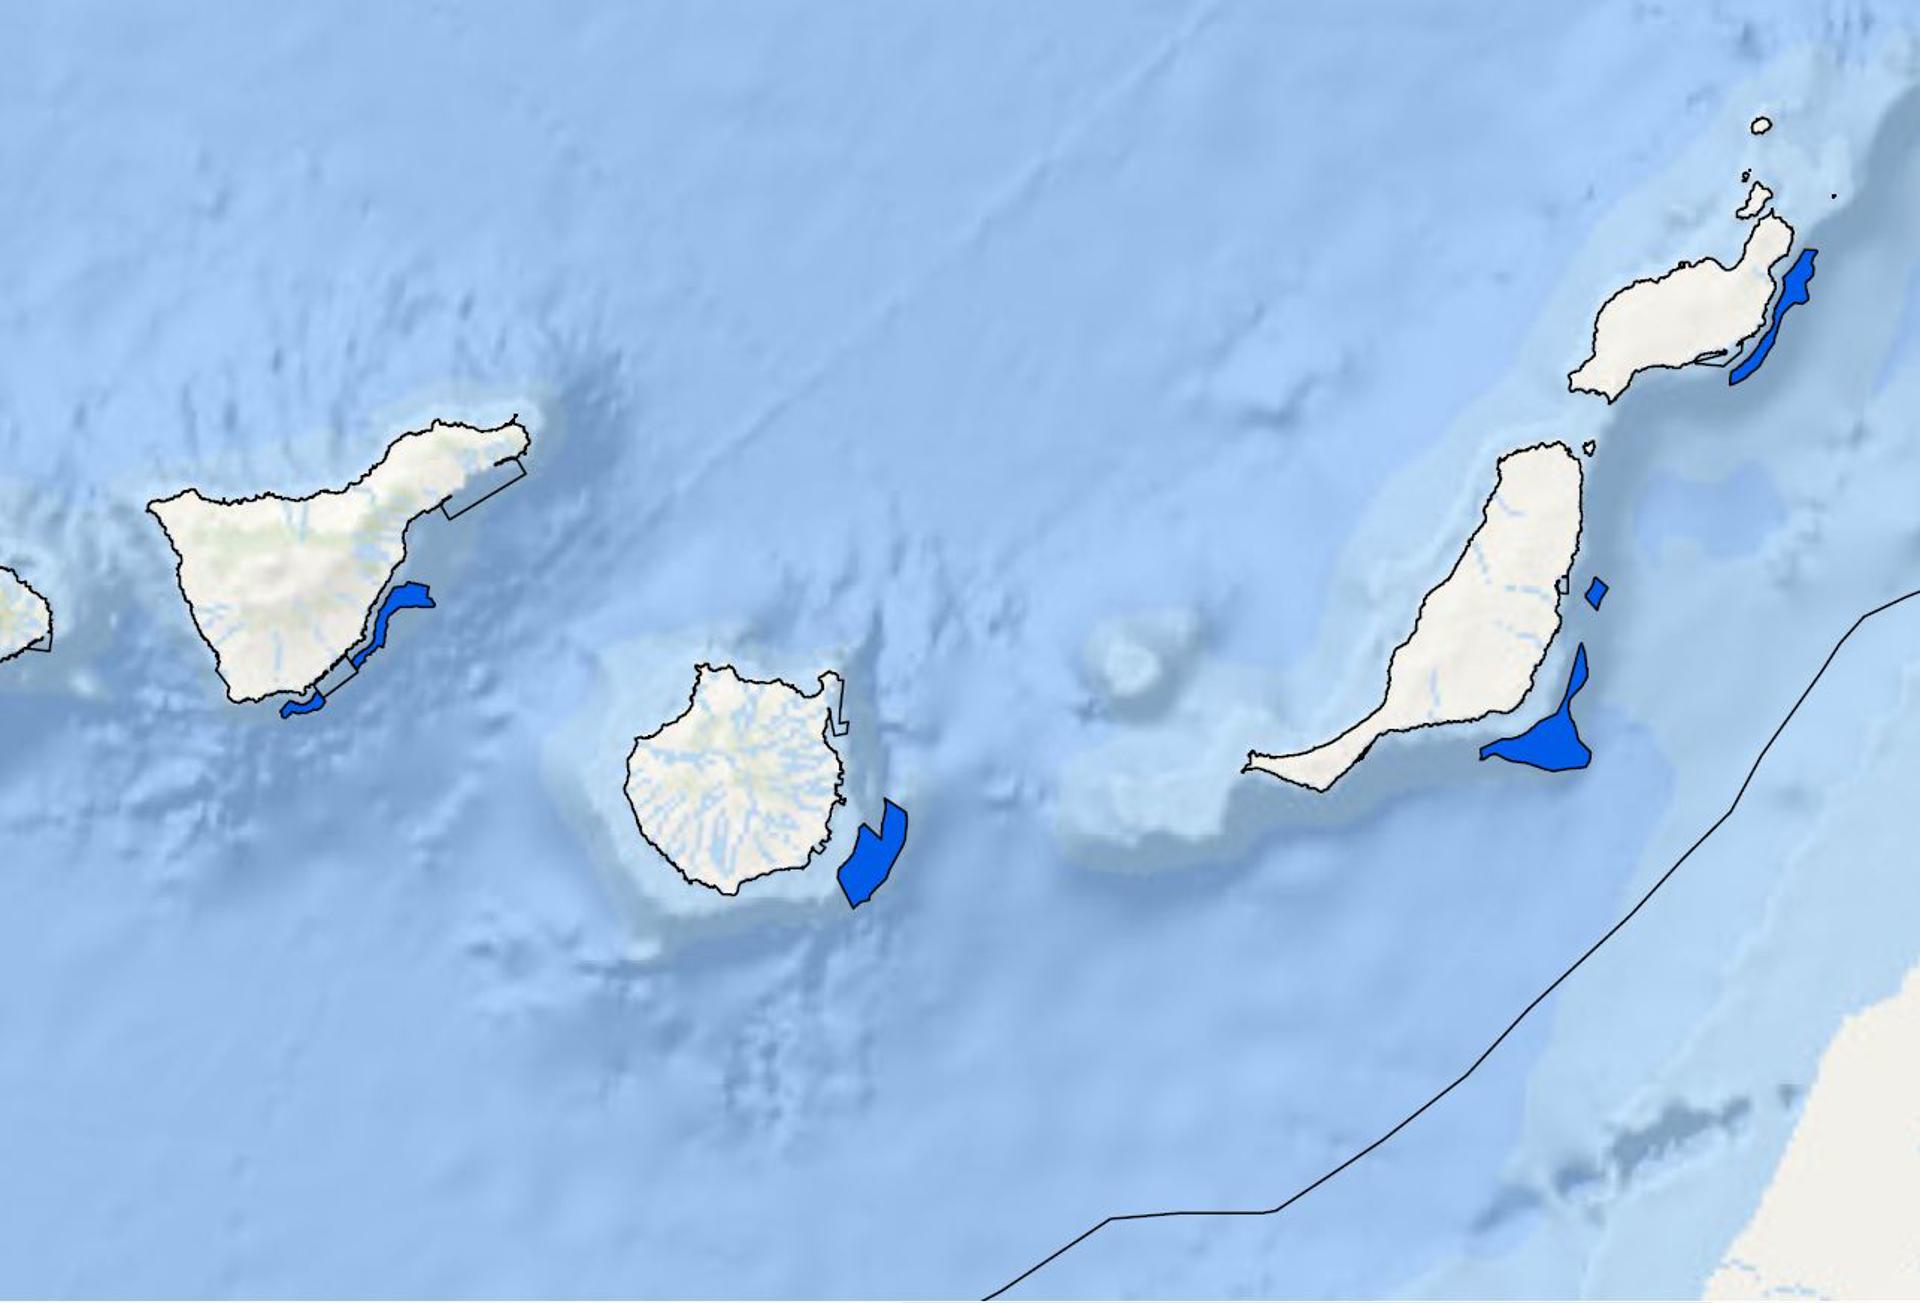 Imagen de las seis zonas de alto potencial para la energía eólica marina definidas en Canarias, obtenida de los documentos publicados por el Ministerio de Transición Ecológica. EFE